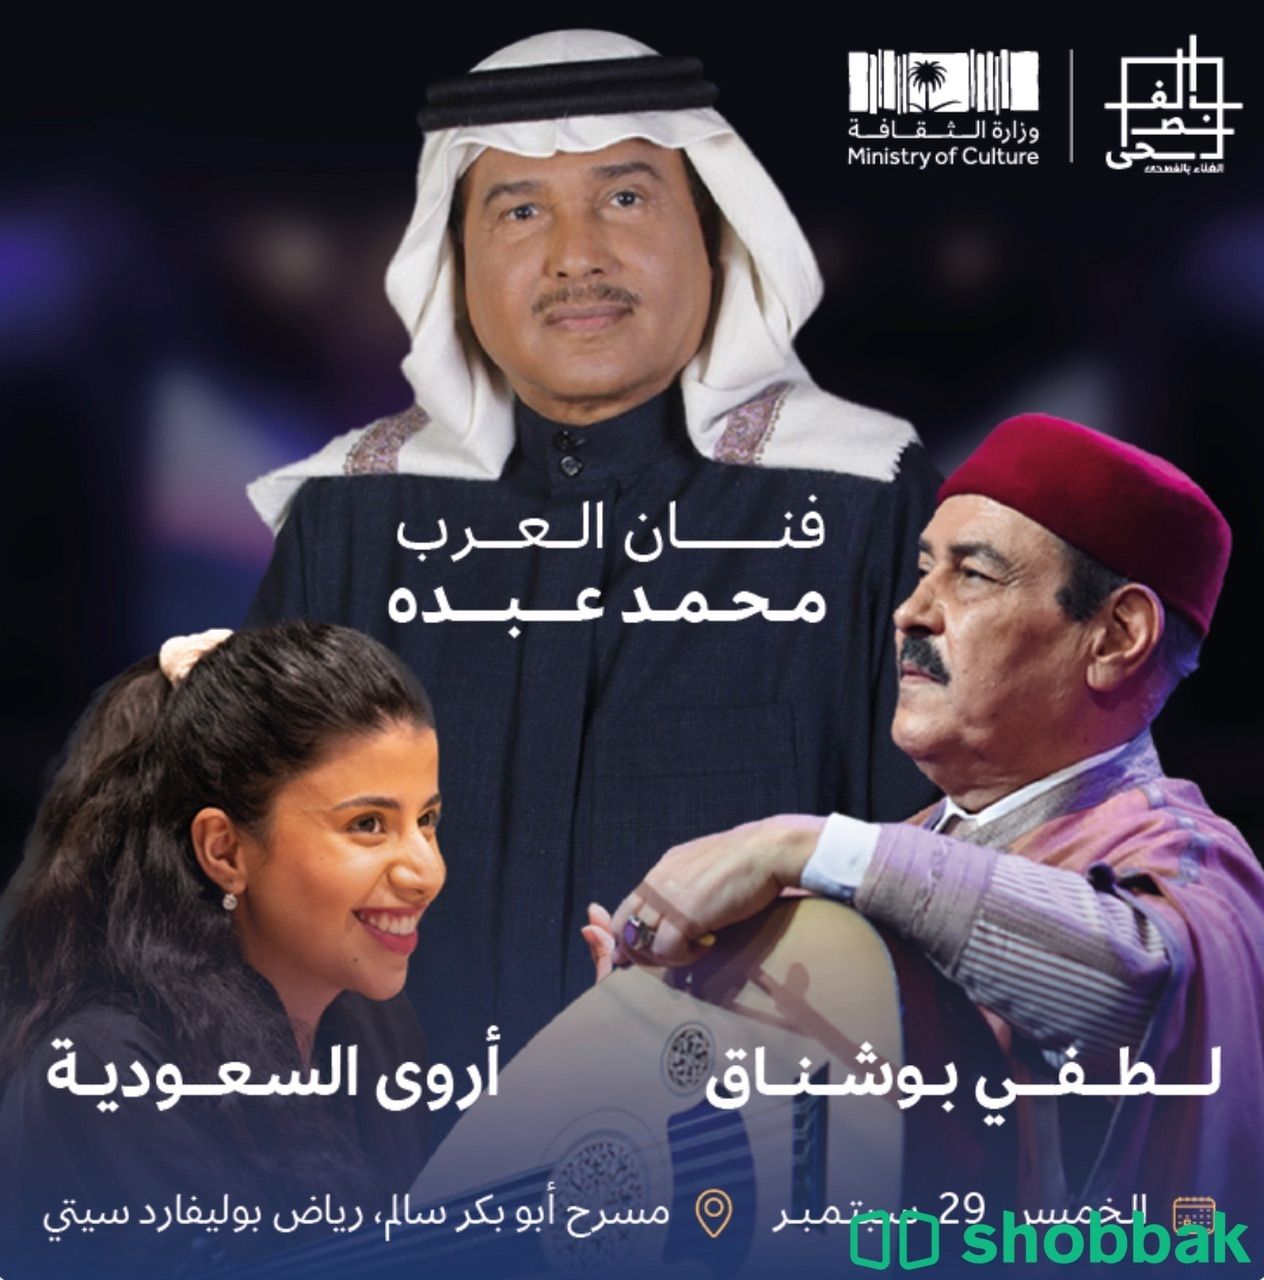 الفنان محمد عبده والفنانة اروى في مهرجان الغناء بالفصحى شباك السعودية